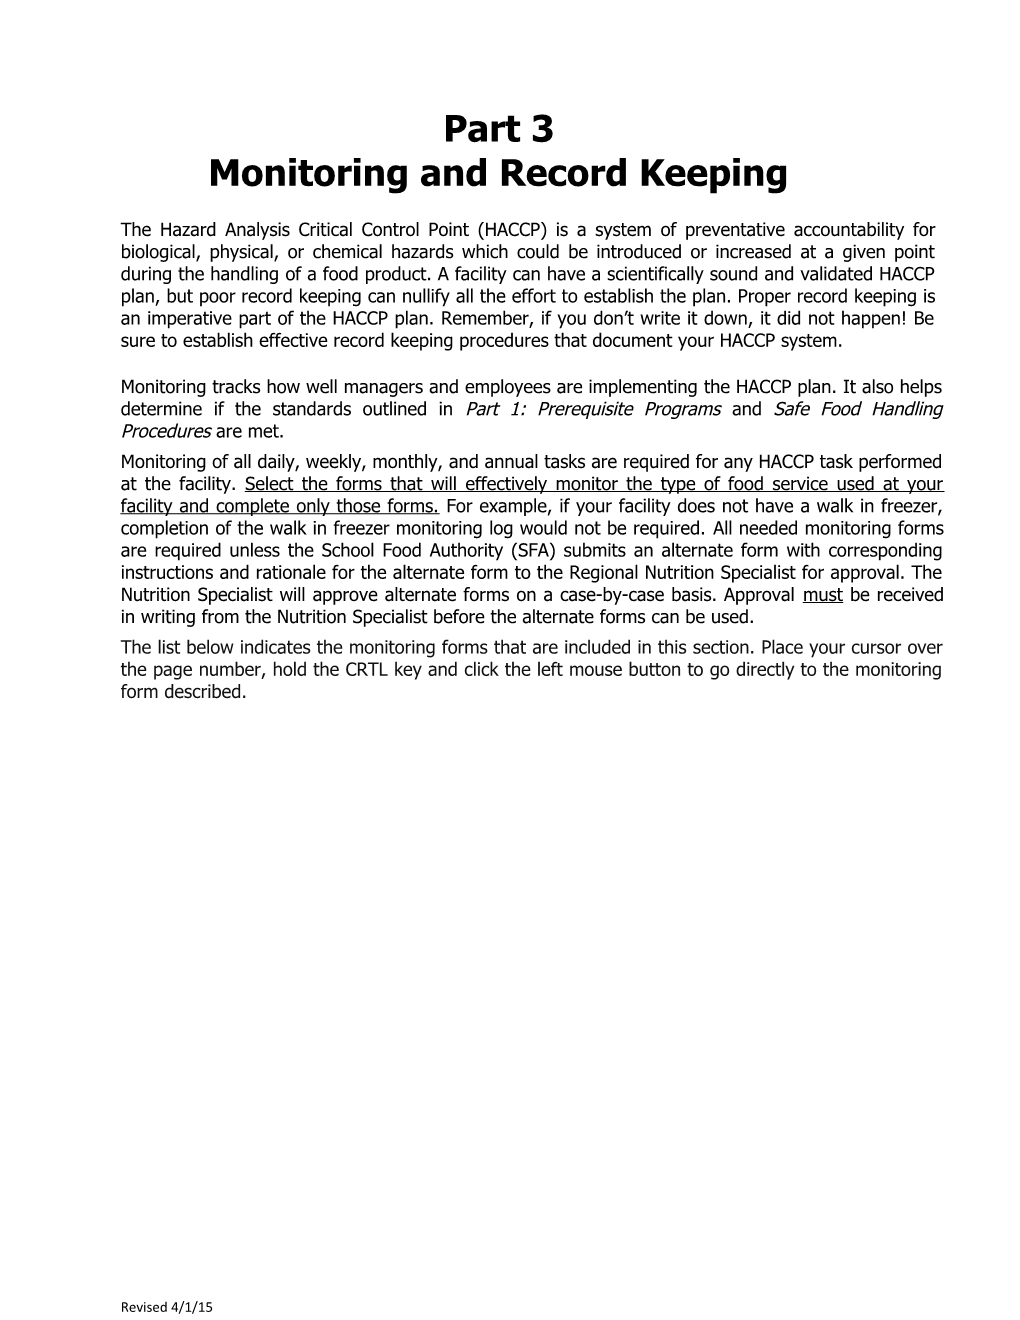 Monitoring and Record Keeping